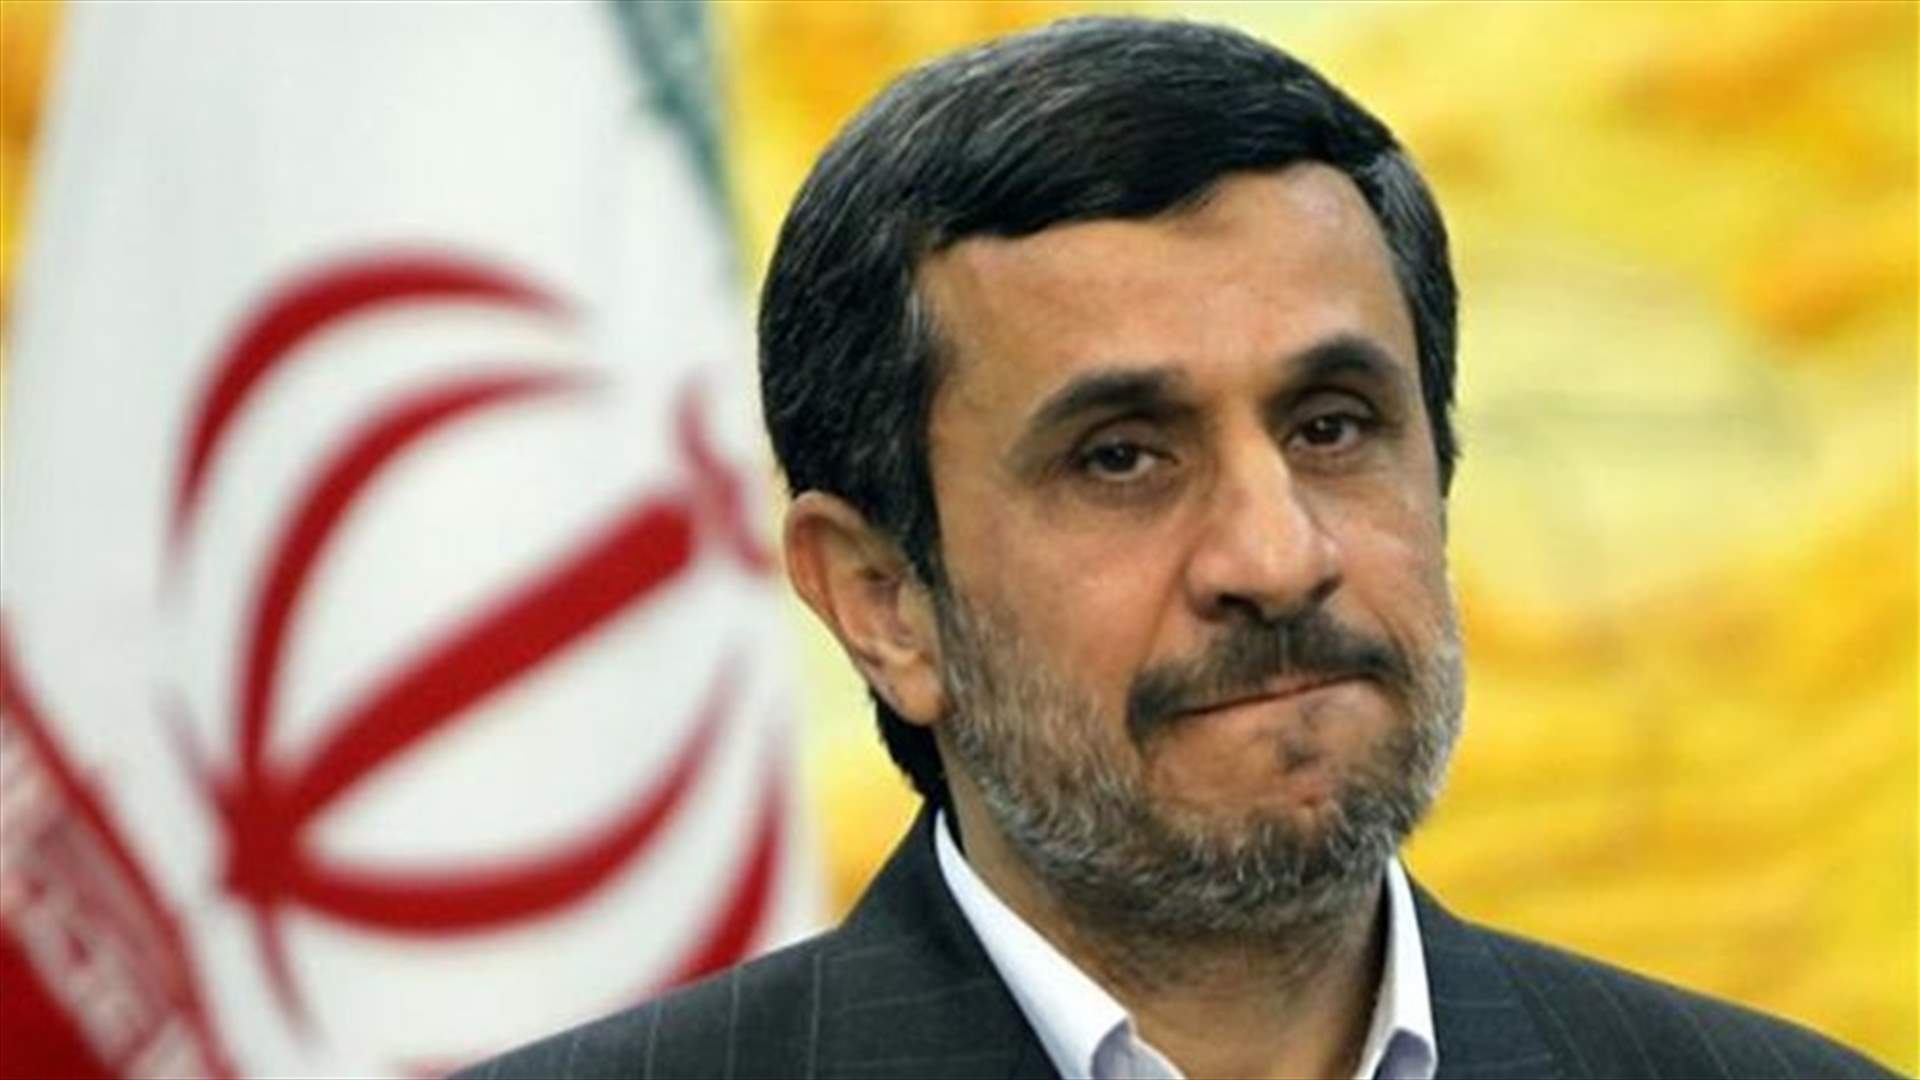 ايران تسمح بنقل المناظرات الانتخابية مباشرة...ونجاد: لن أؤيد أحدا